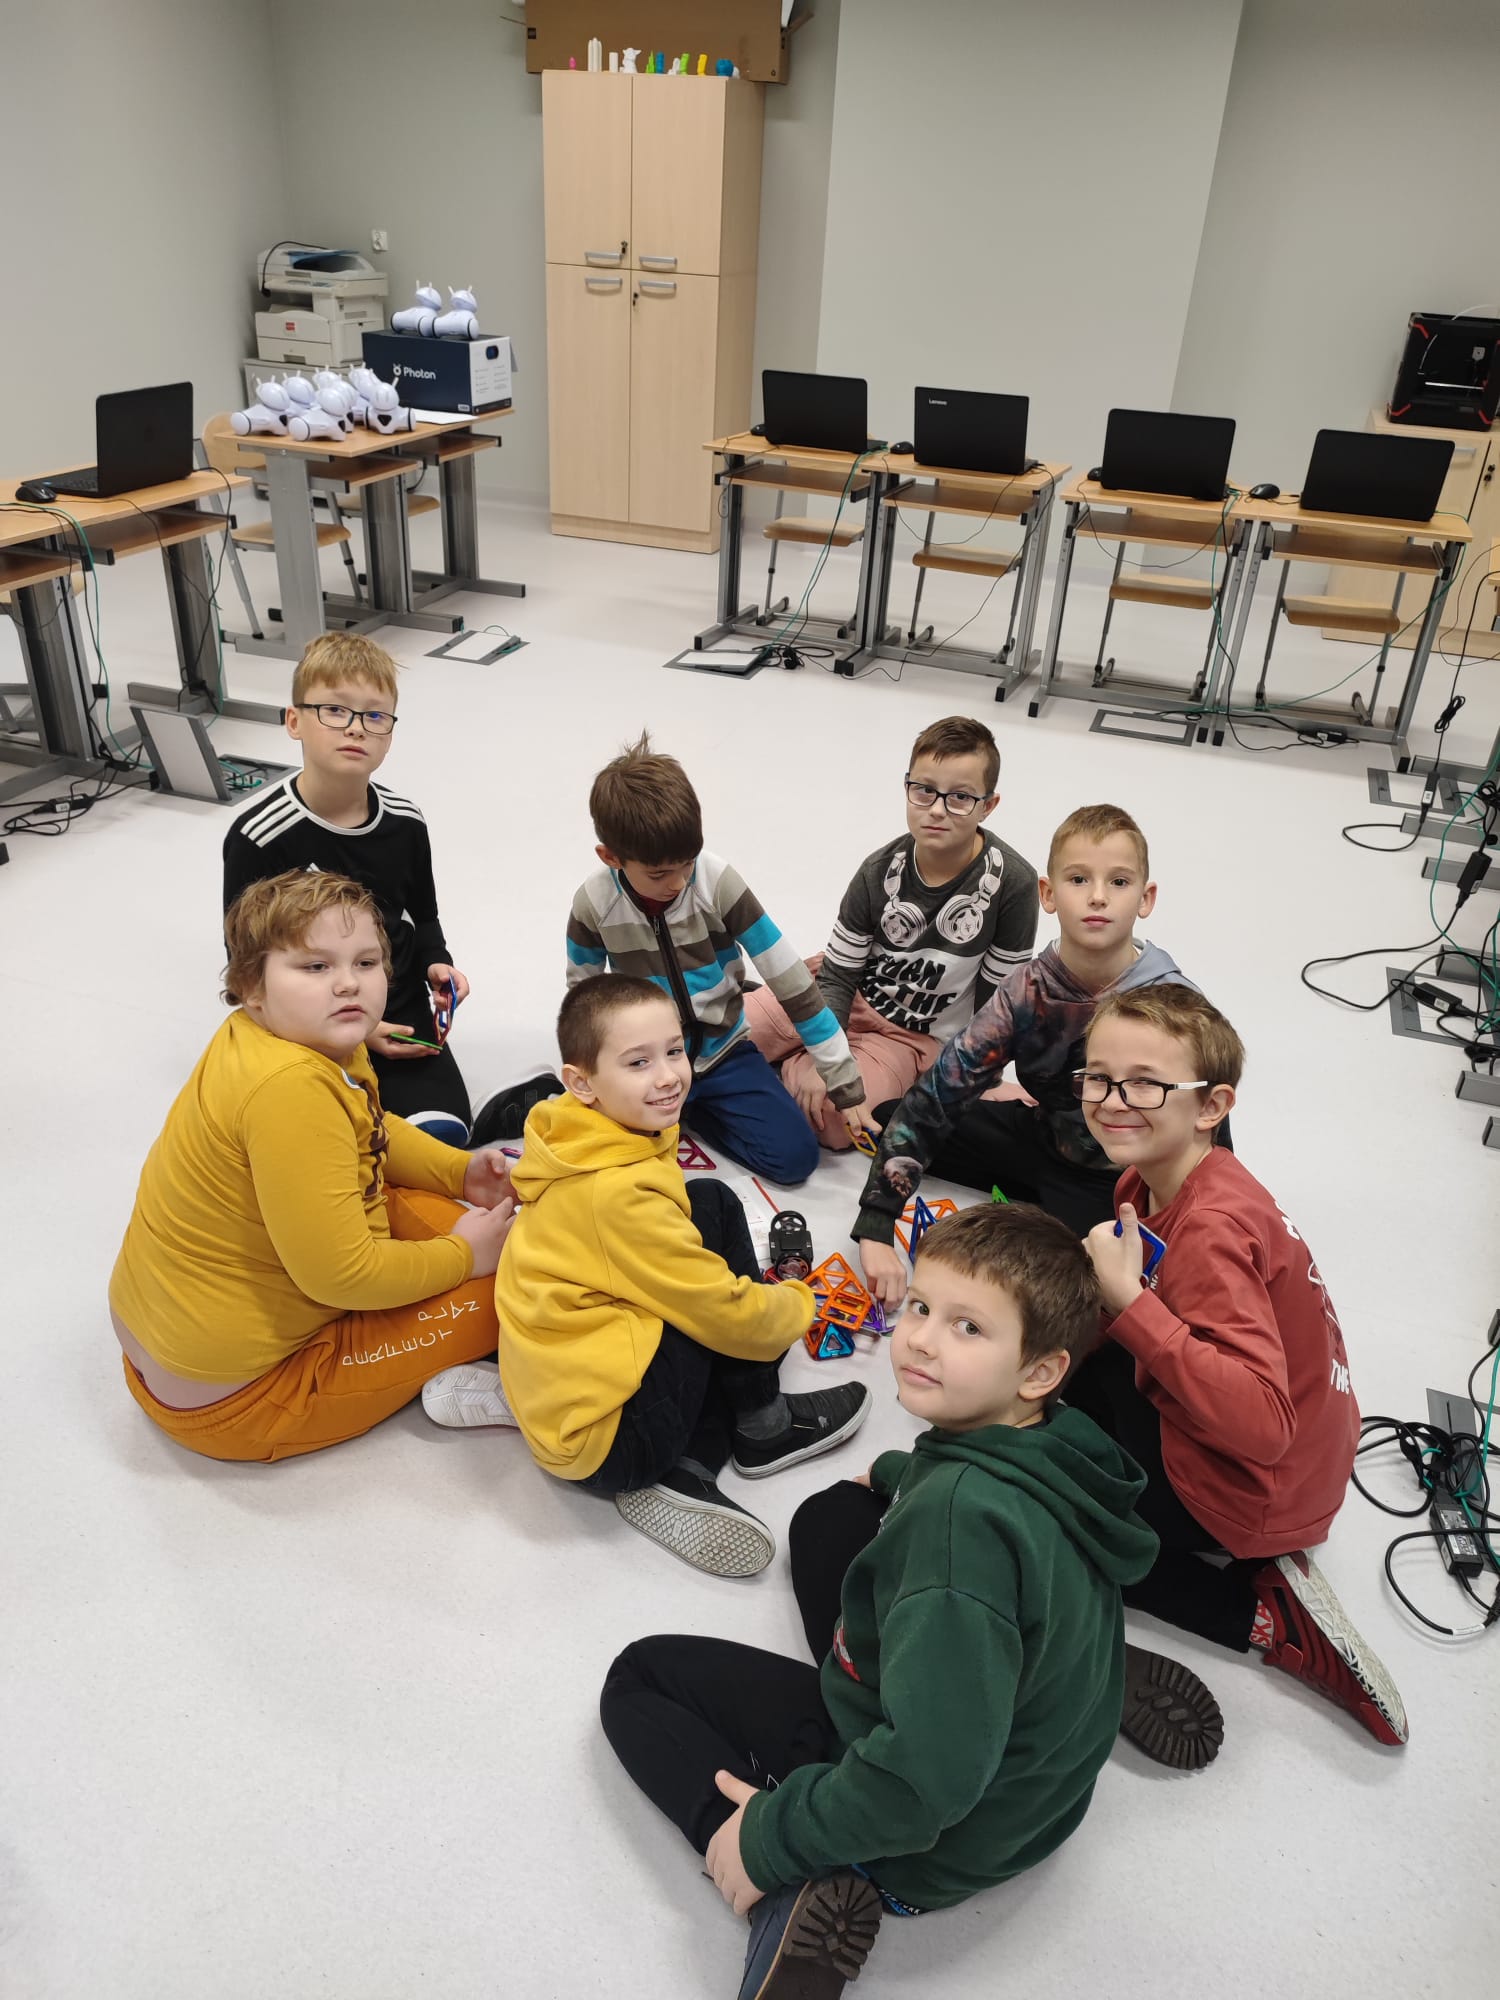 Grupa chłopców siedząc na podłodze układa konstrukcję z klocków